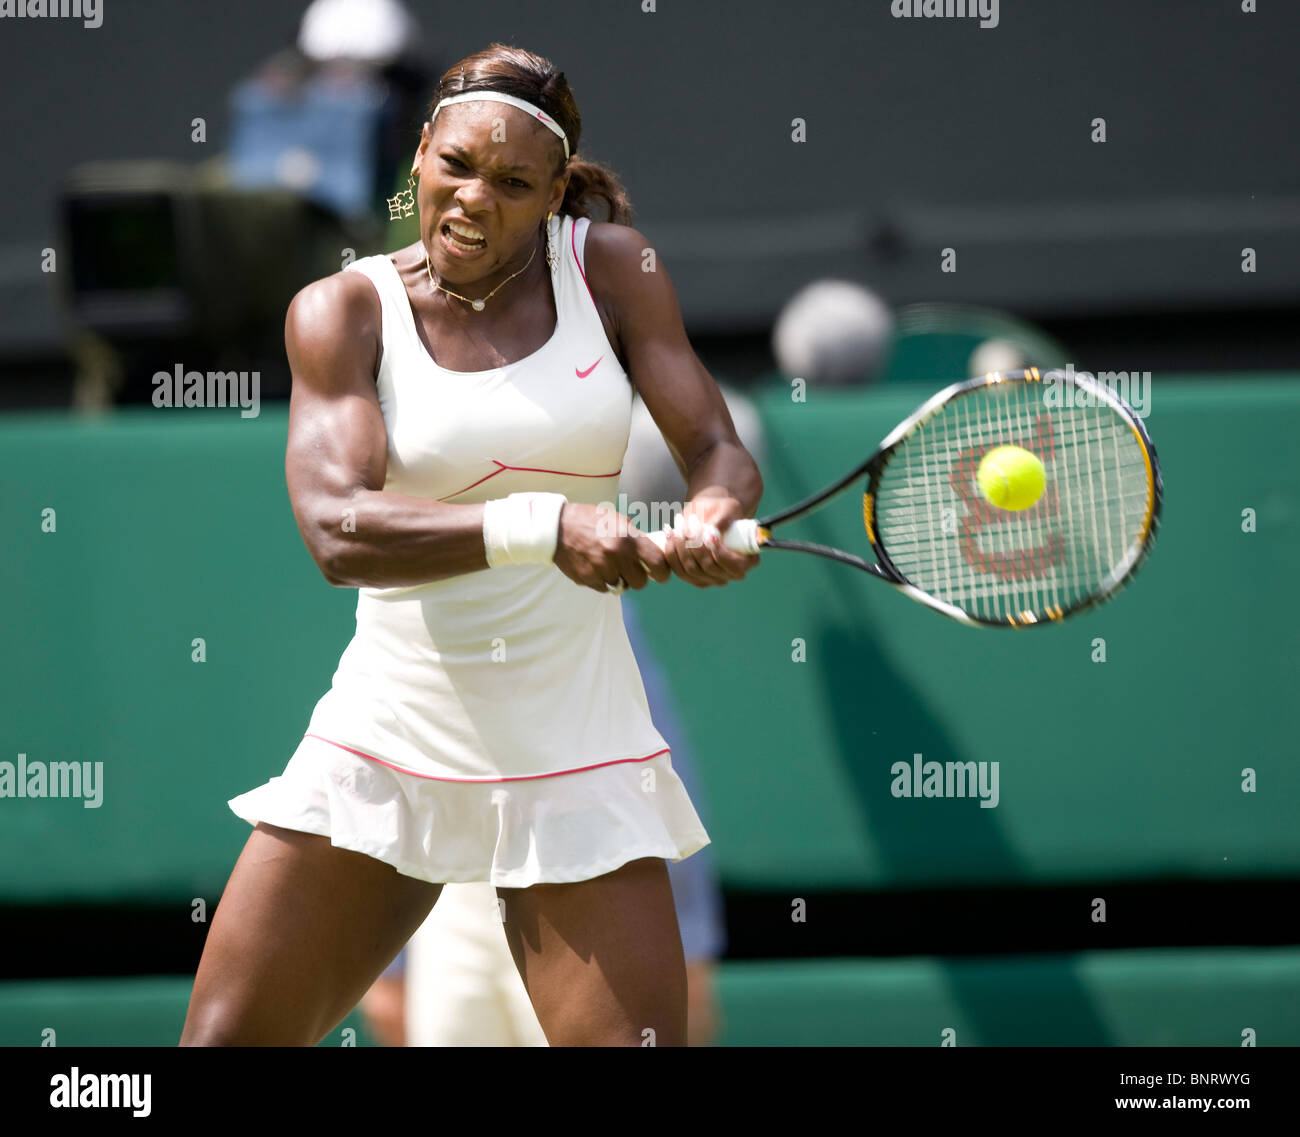 Serena Williams (USA) en action au cours de la Tennis de Wimbledon 2010 Banque D'Images